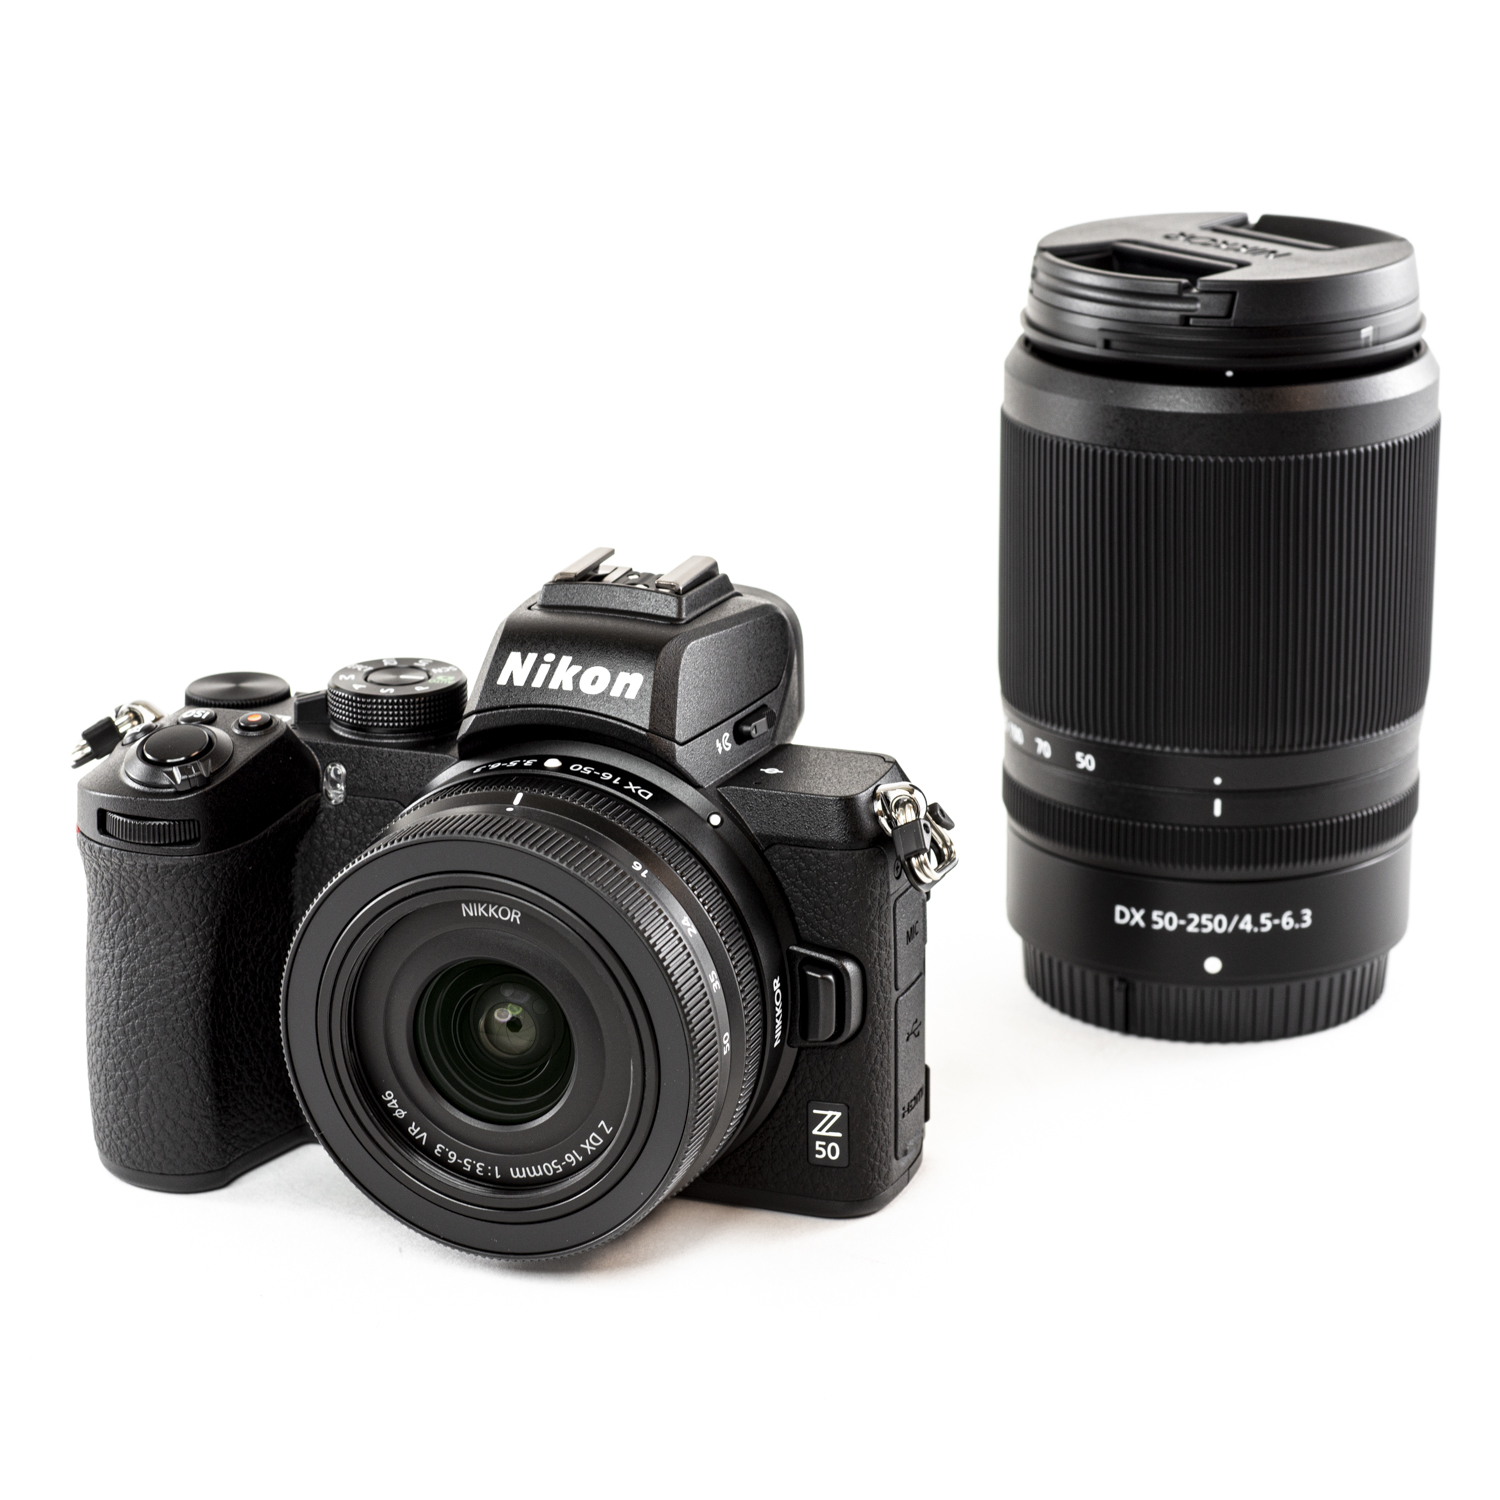 TThumbnail image for Nikon Z50 + Z DX 16-50mm f/3.5-6.3 VR et NIKKOR Z DX 50-250mm f/4.5-6.3 VR